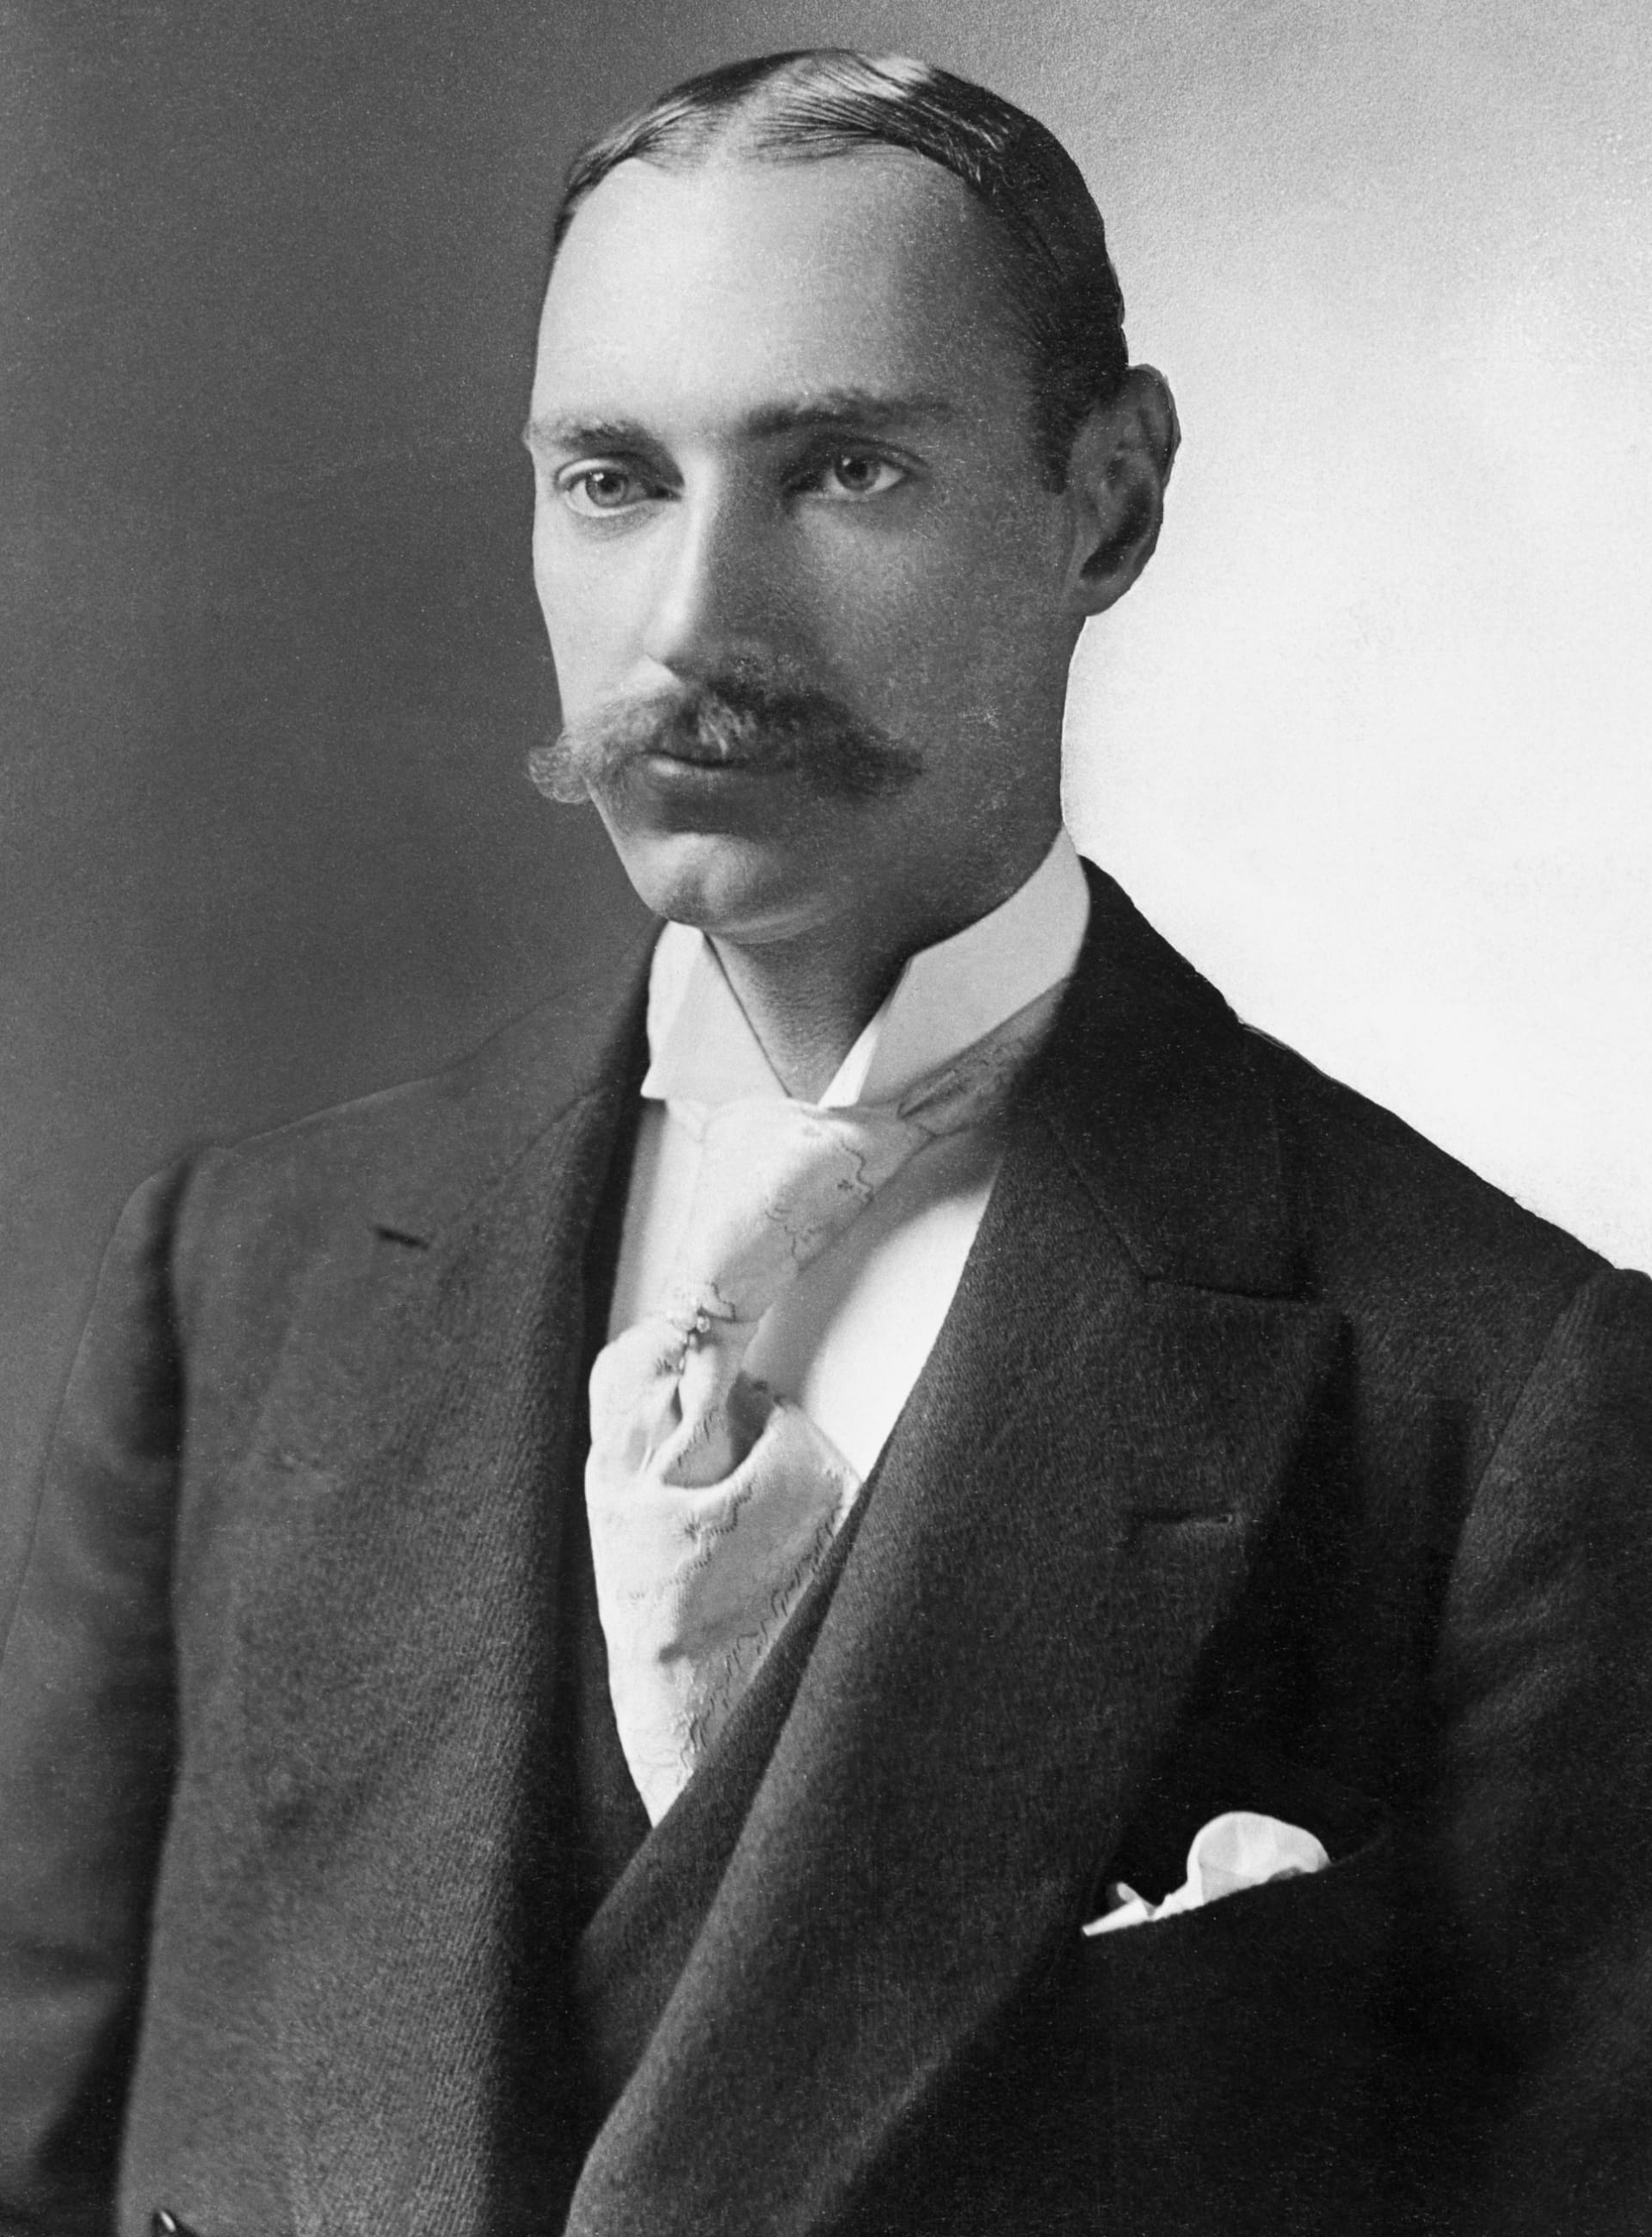 John Jacob Astor byl nejbohatším pasažérem Titanicu. Navzdory tomu, co se o něm vykládá, se těsně před smrtí zachoval velmi šlechetně.